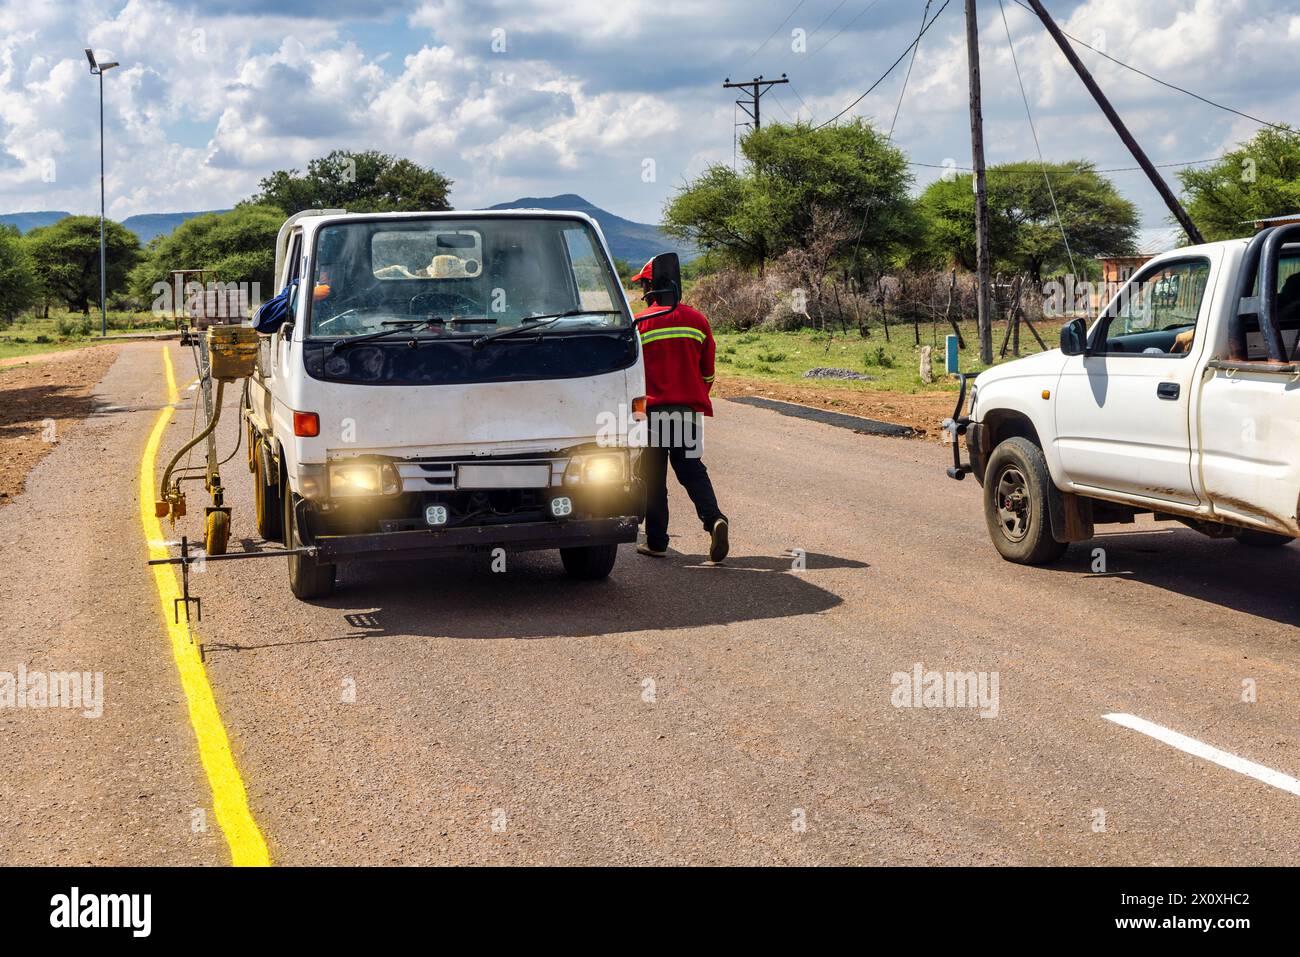 uomini africani che riparano e mantengono sbiaditi cartelli stradali sull'autostrada, ridipingono cartelli gialli per la sicurezza stradale Foto Stock